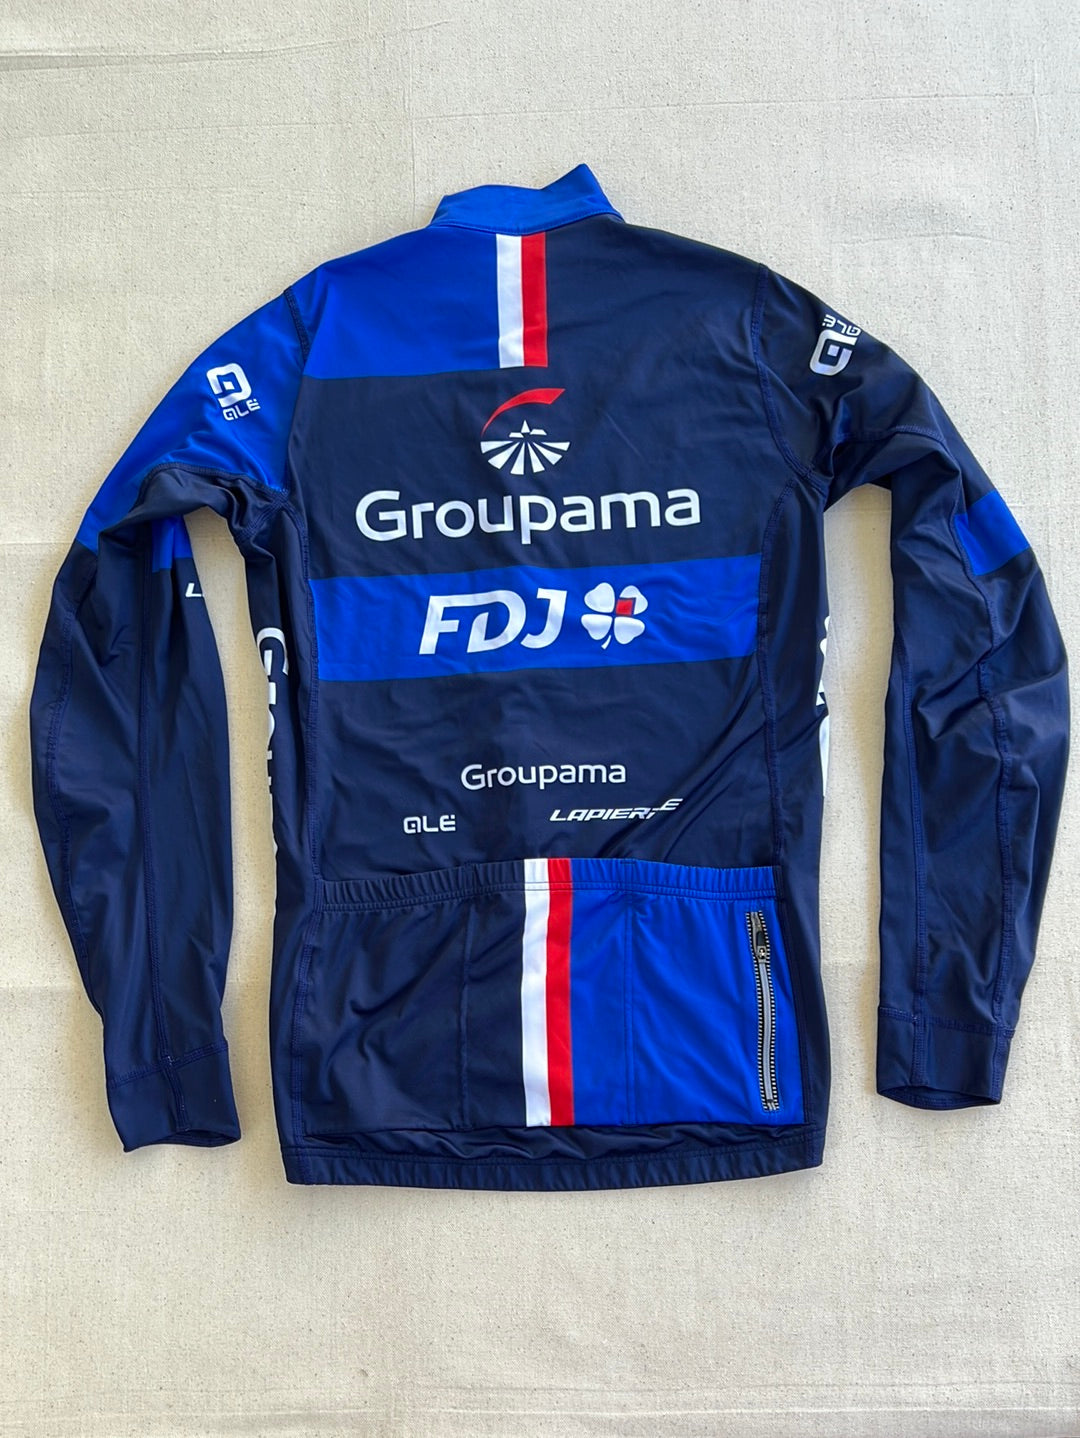 Long Sleeve Jersey Thermal | Ale | Groupama Française des Jeux FDJ | Pro Cycling Kit